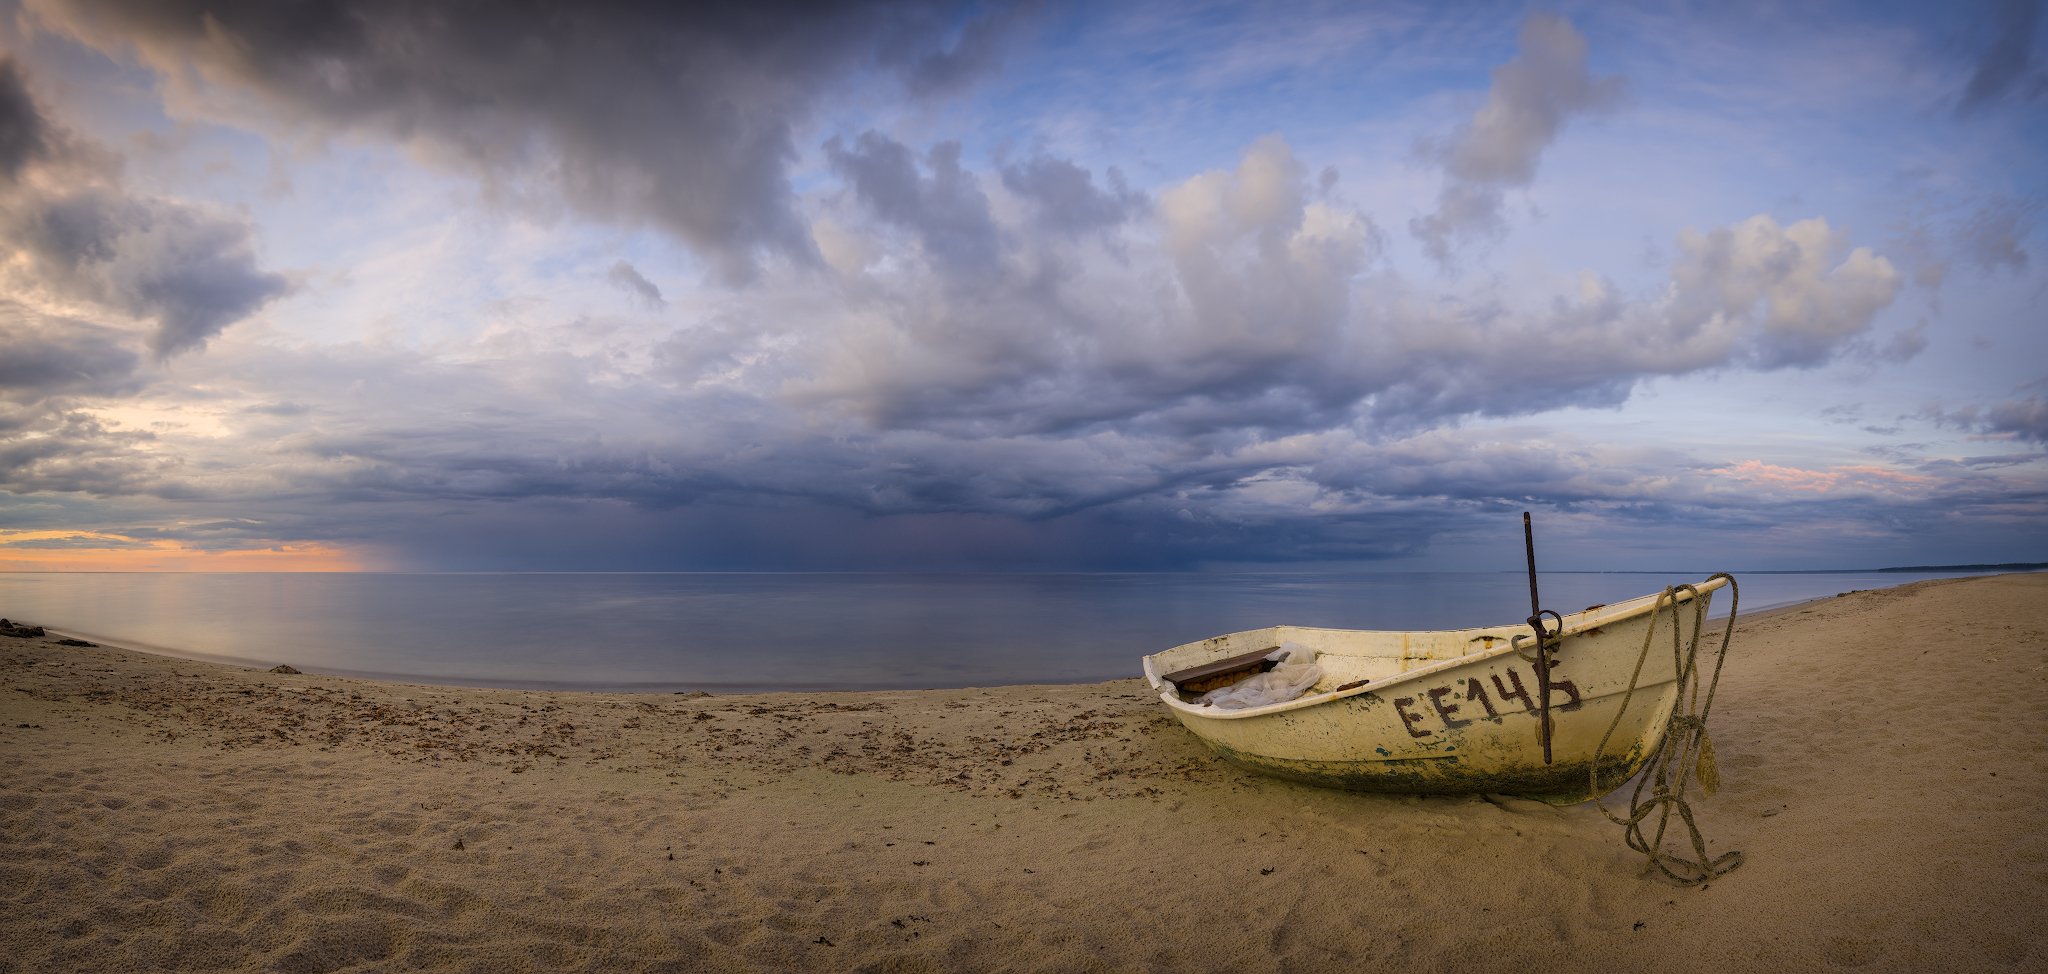 панорама пейзаж латвия рига море закат, Алексей Мельситов